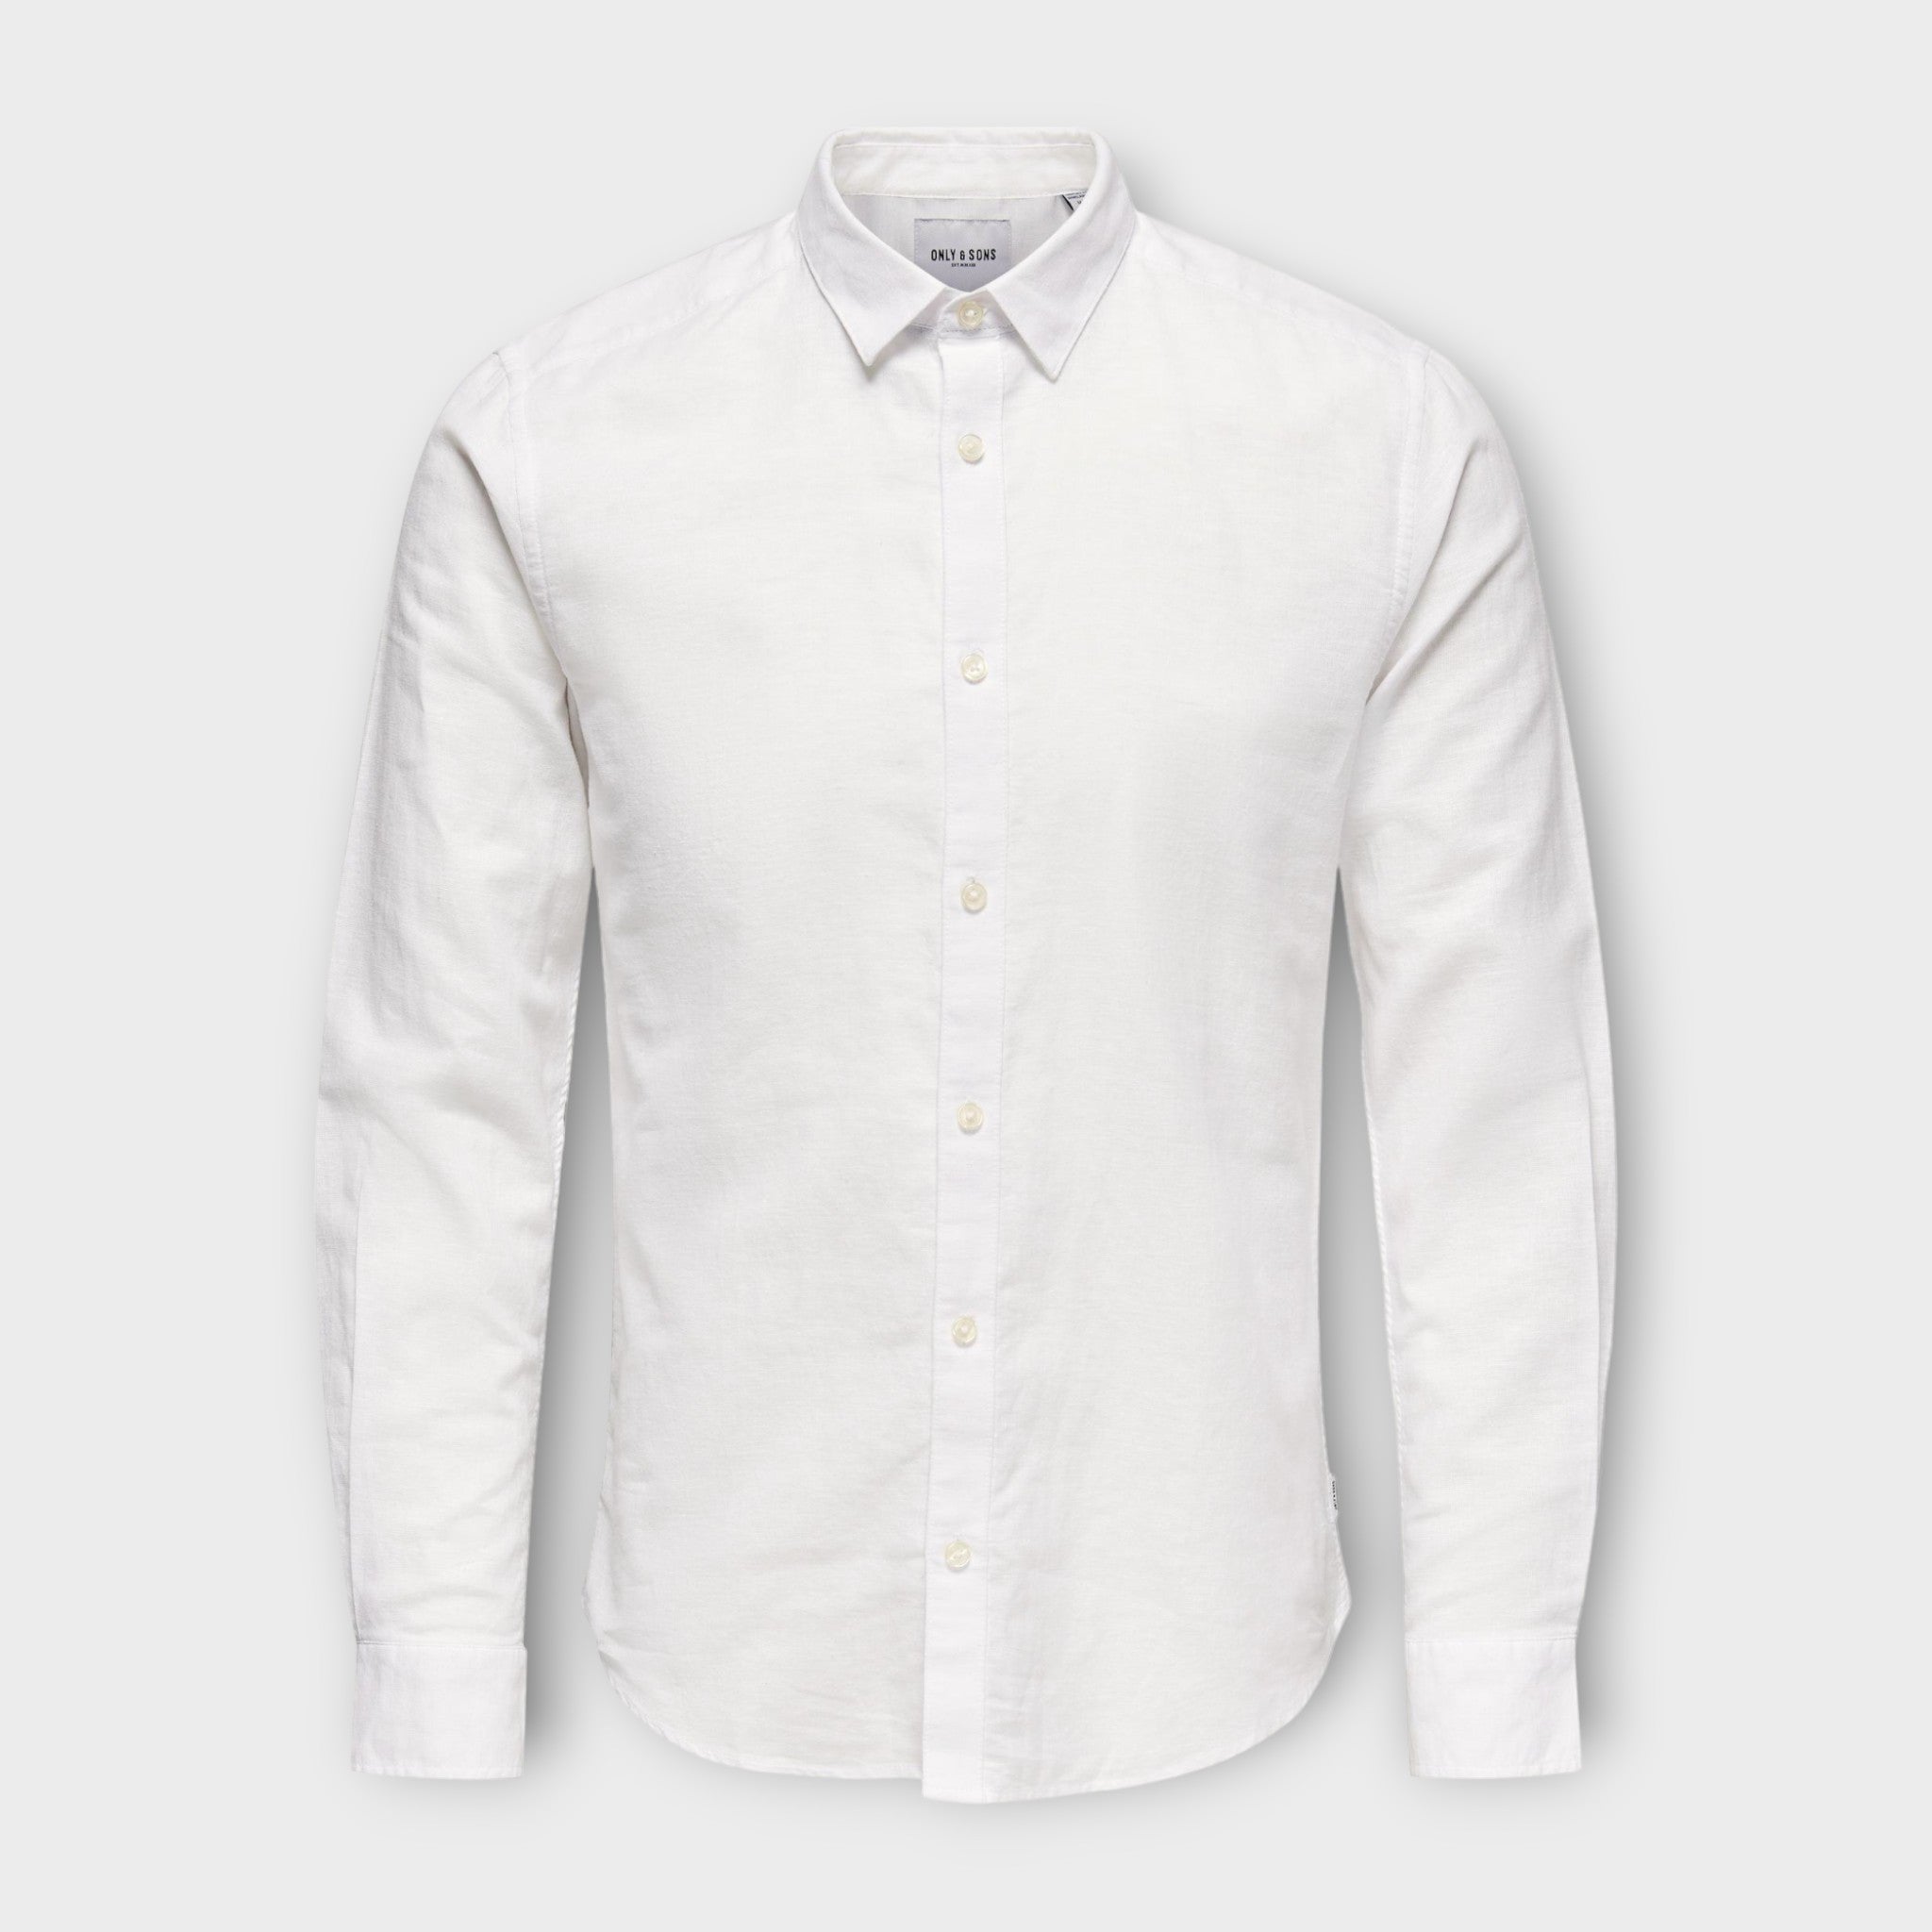 Caiden  LS Solid Linen Shirt  White, Only and Sons hvid langærmet hørskjorte til herre. Her set forfra.